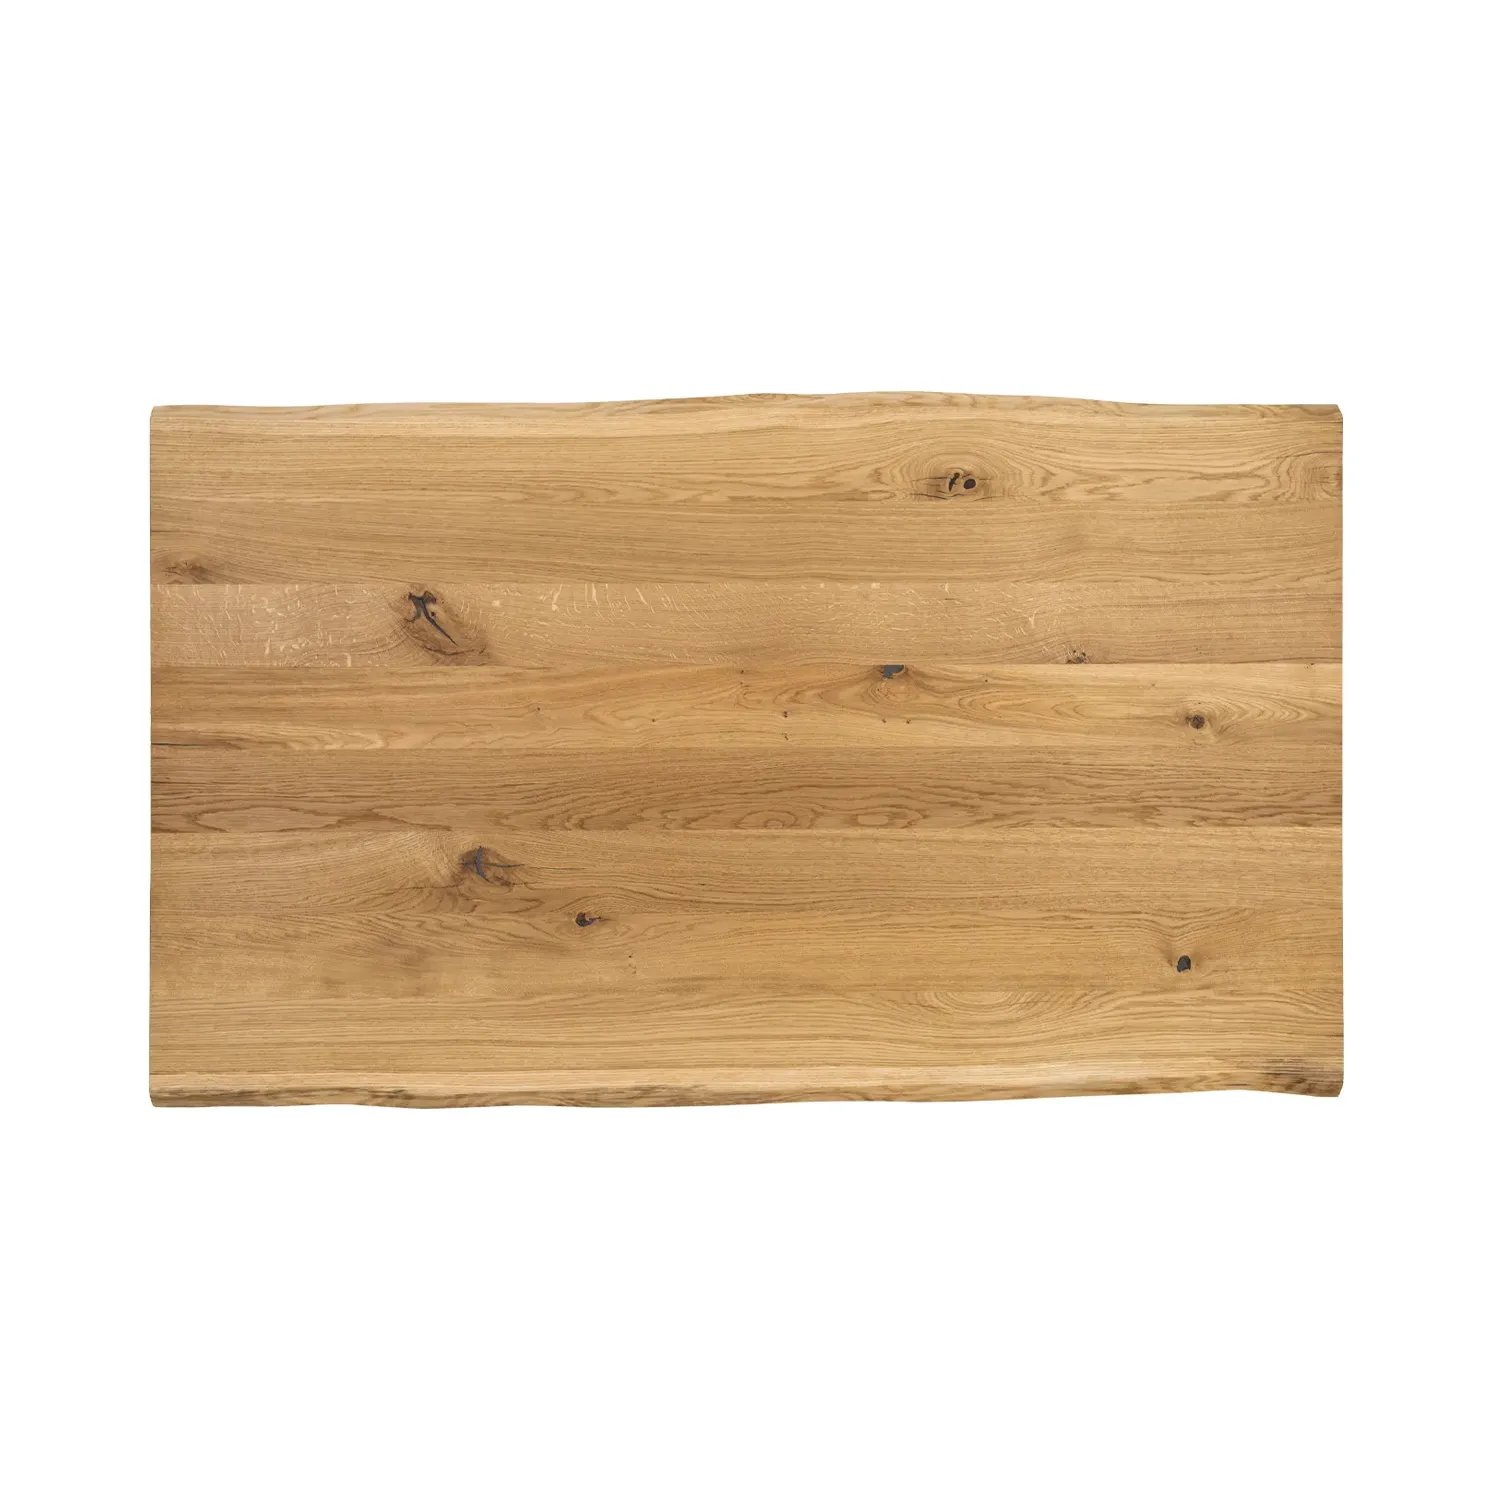 Holzplatte aus Eiche im Detail mit Baumkante von oben